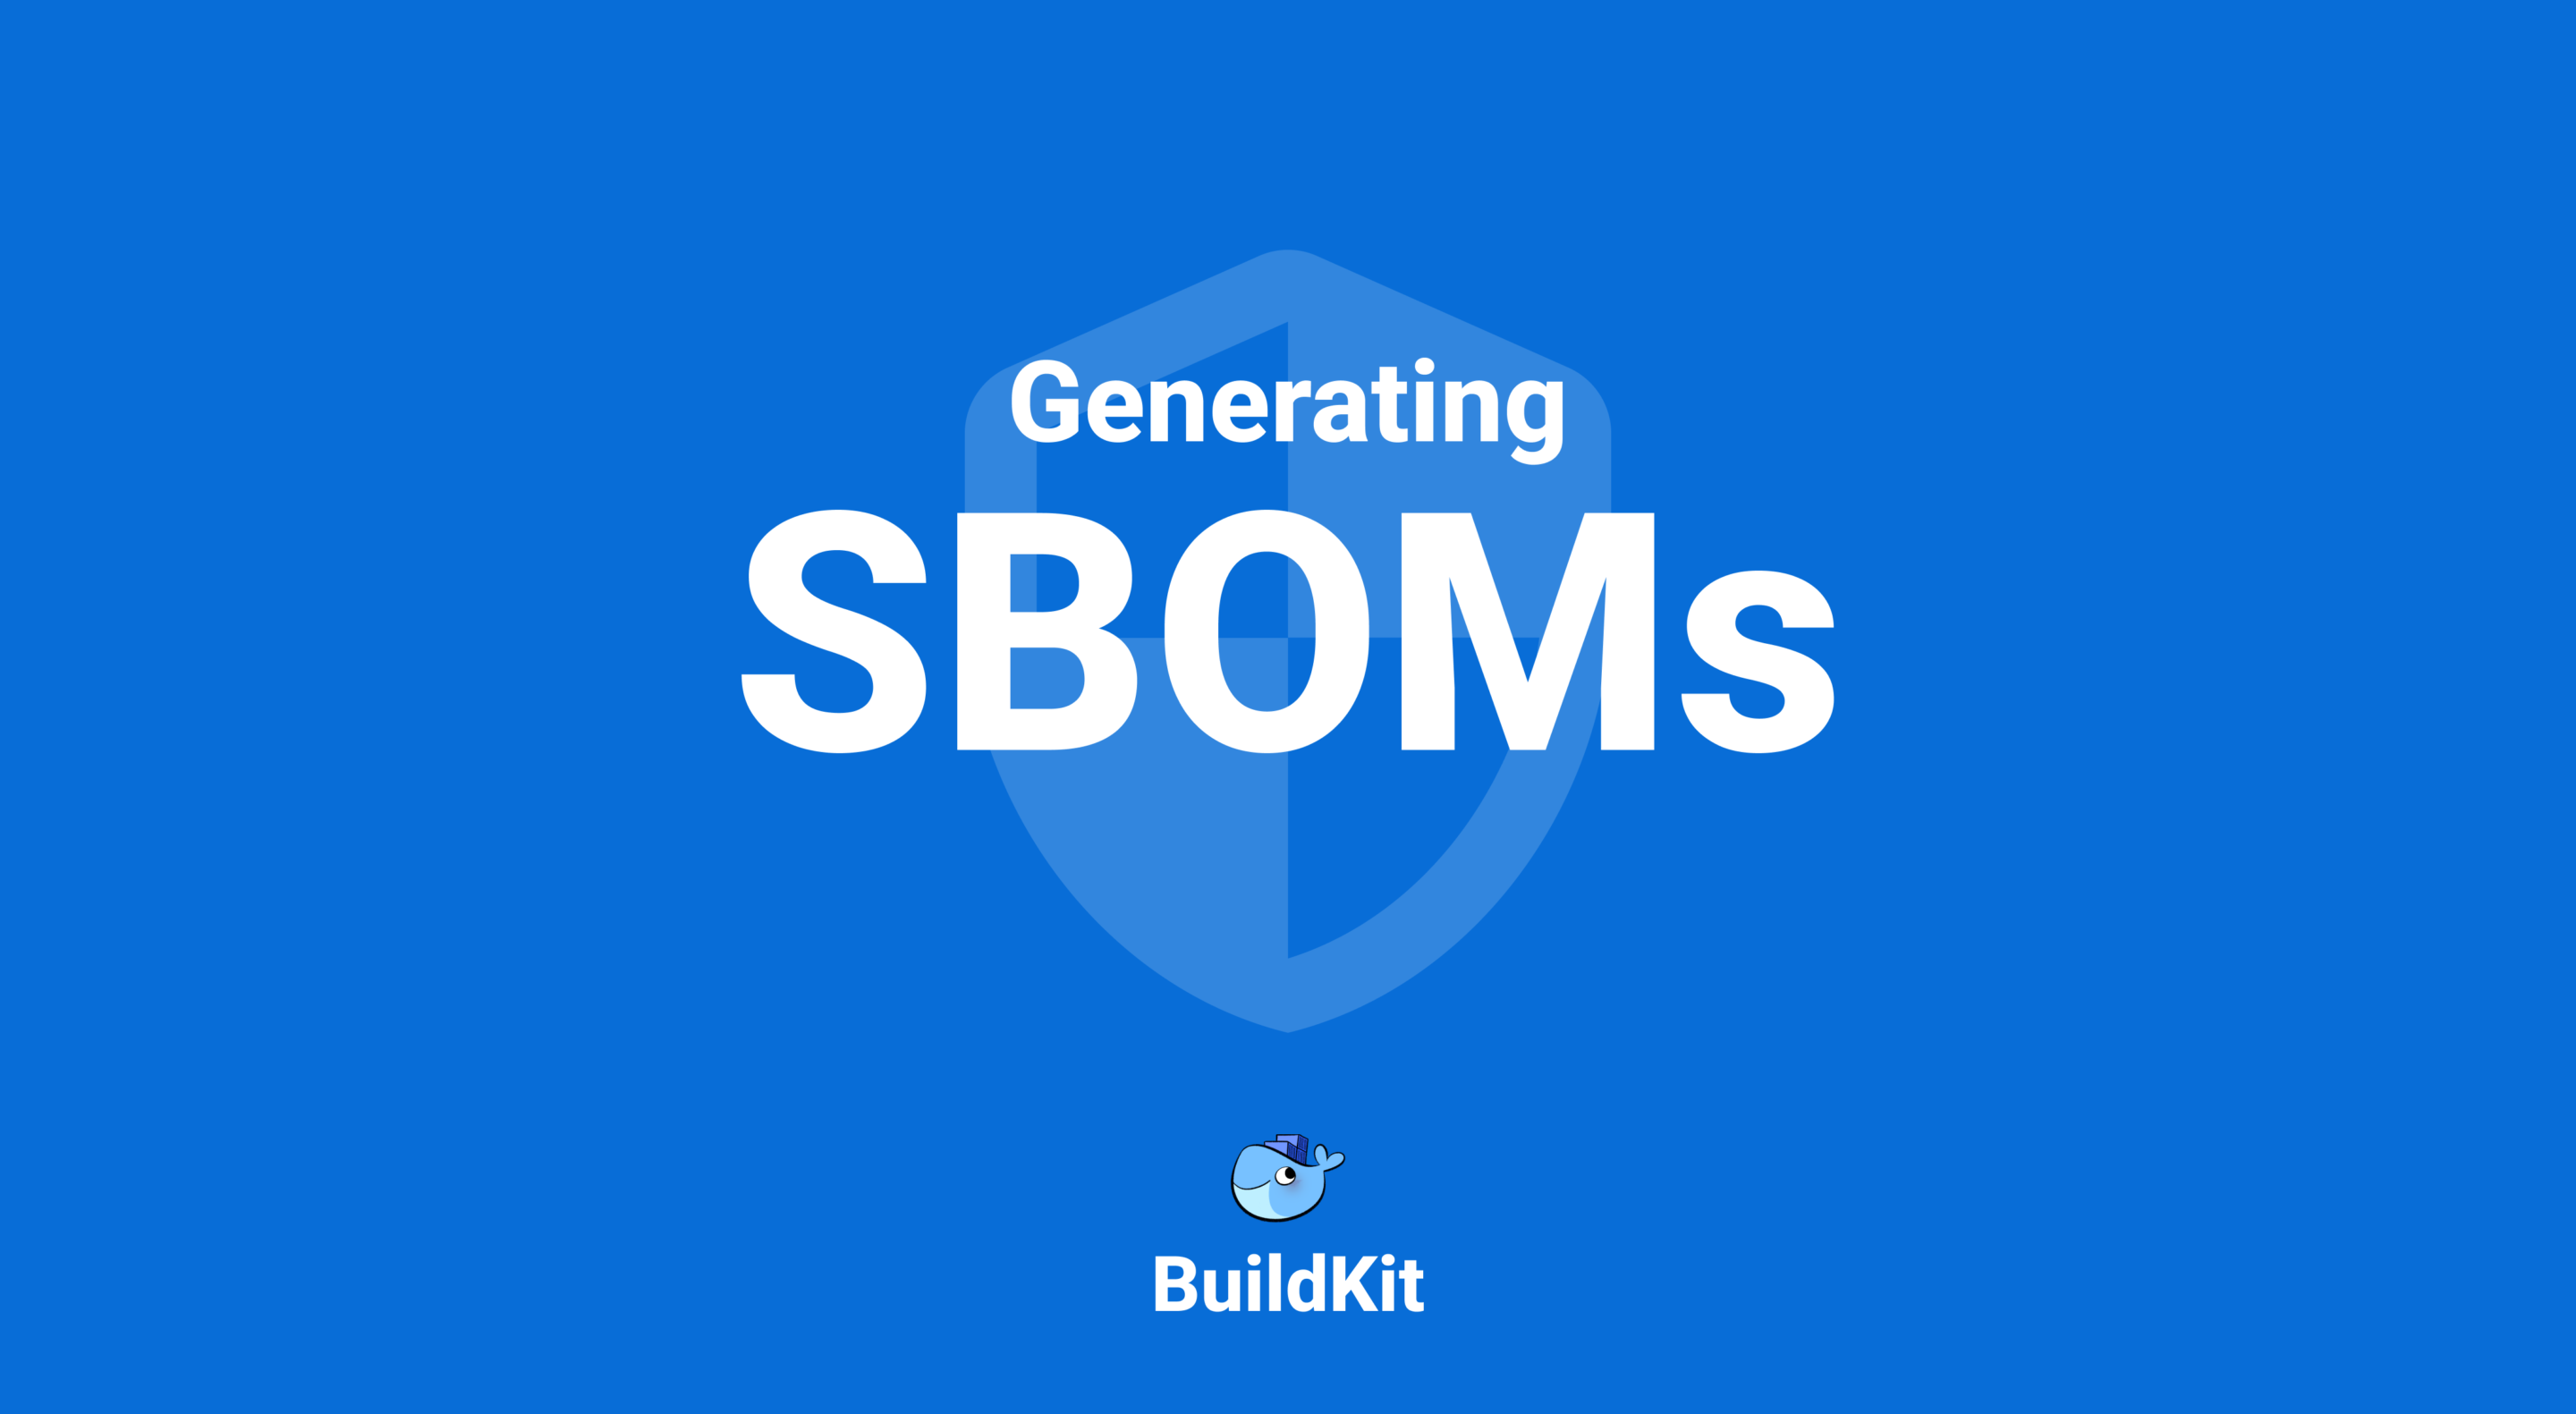 buildkit を使用してイメージとパッケージの sbom を生成する方法について説明します。